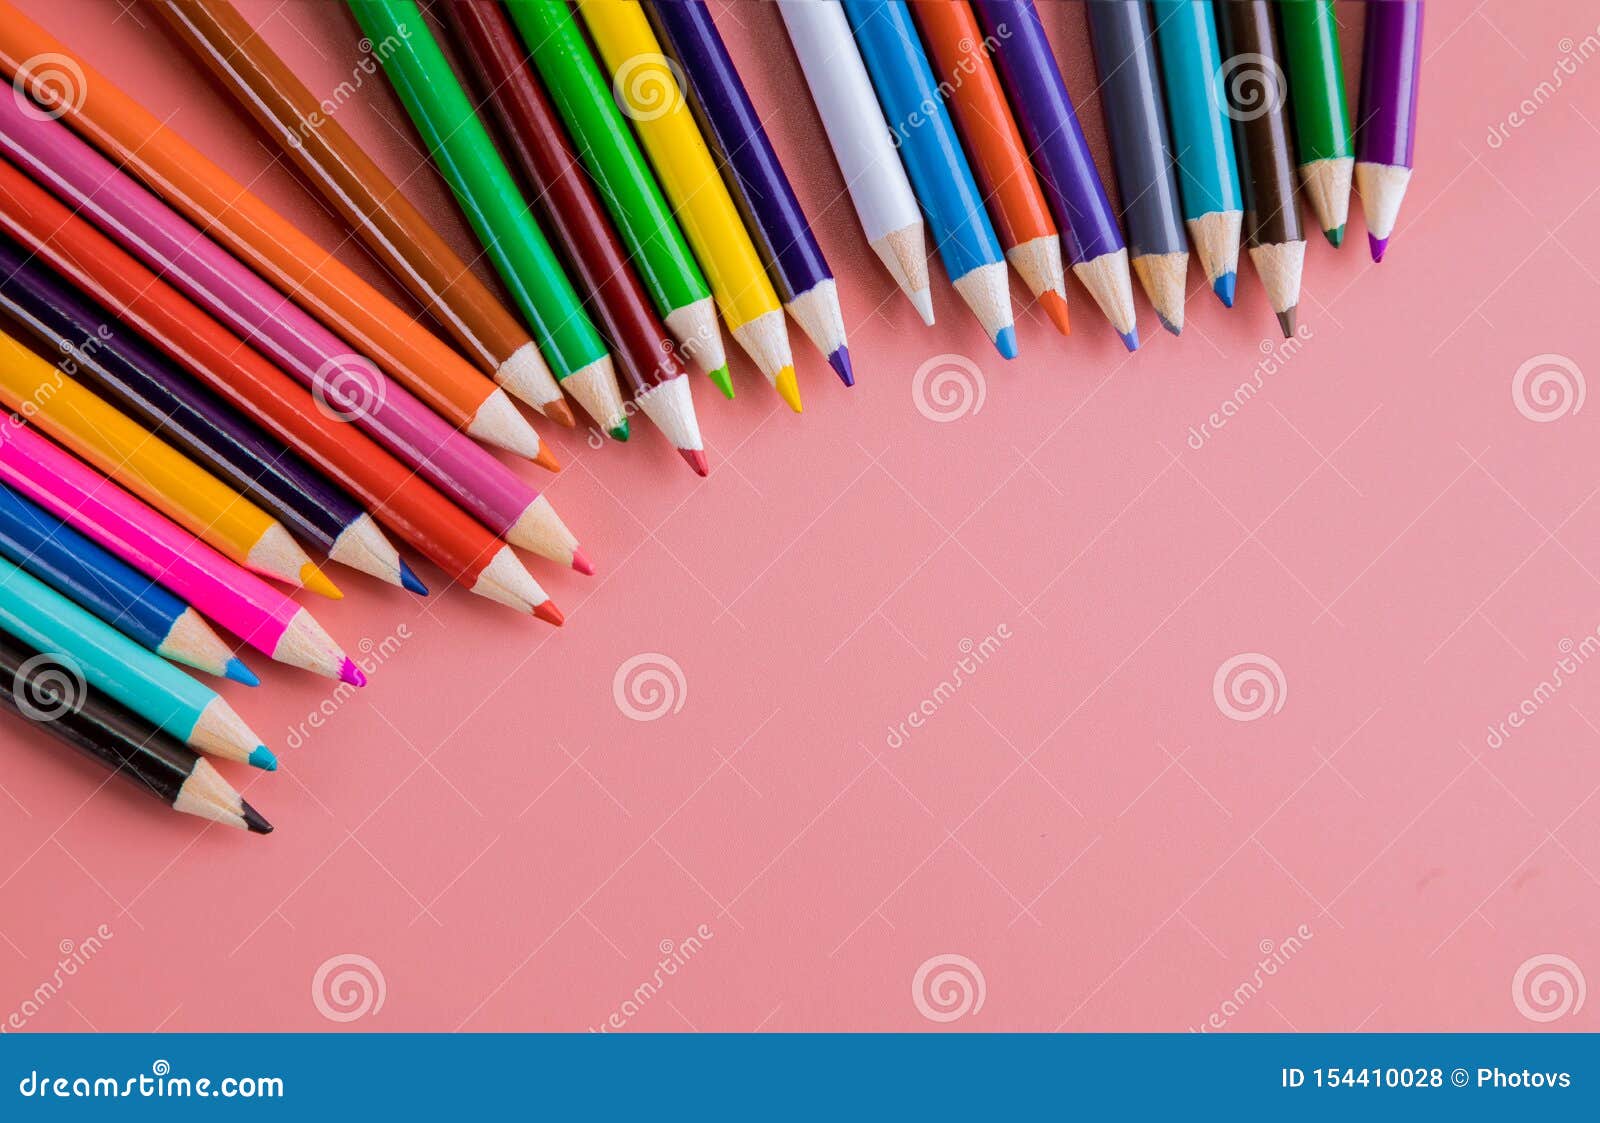 Với từng cây bút màu đơn lẻ trên nền hồng, bạn sẽ cảm thấy hứng thú và sáng tạo hơn. Màu hồng tạo ra sự nổi bật trong bức ảnh, cho thấy sự sang trọng và tinh tế. Hãy xem hình ảnh liên quan để tìm kiếm cảm hứng cho cuộc sống sáng tạo của bạn.